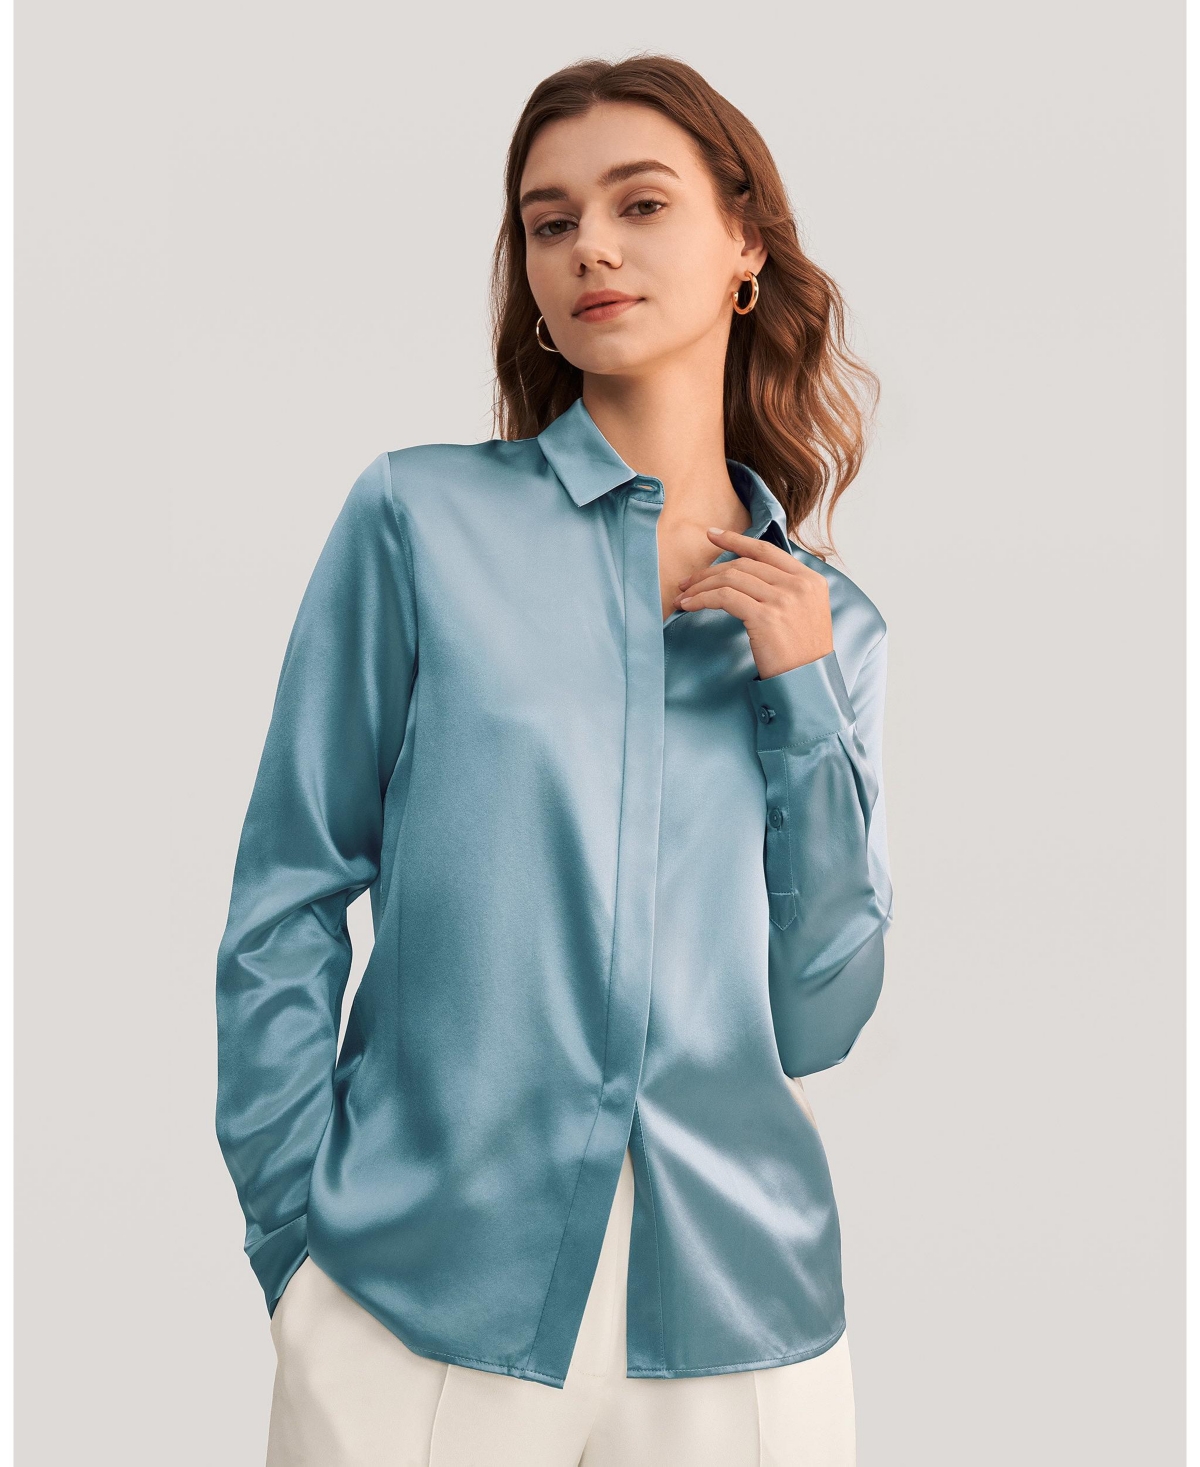 LILYSILK Button-up Striped Silk Nightshirt For Women